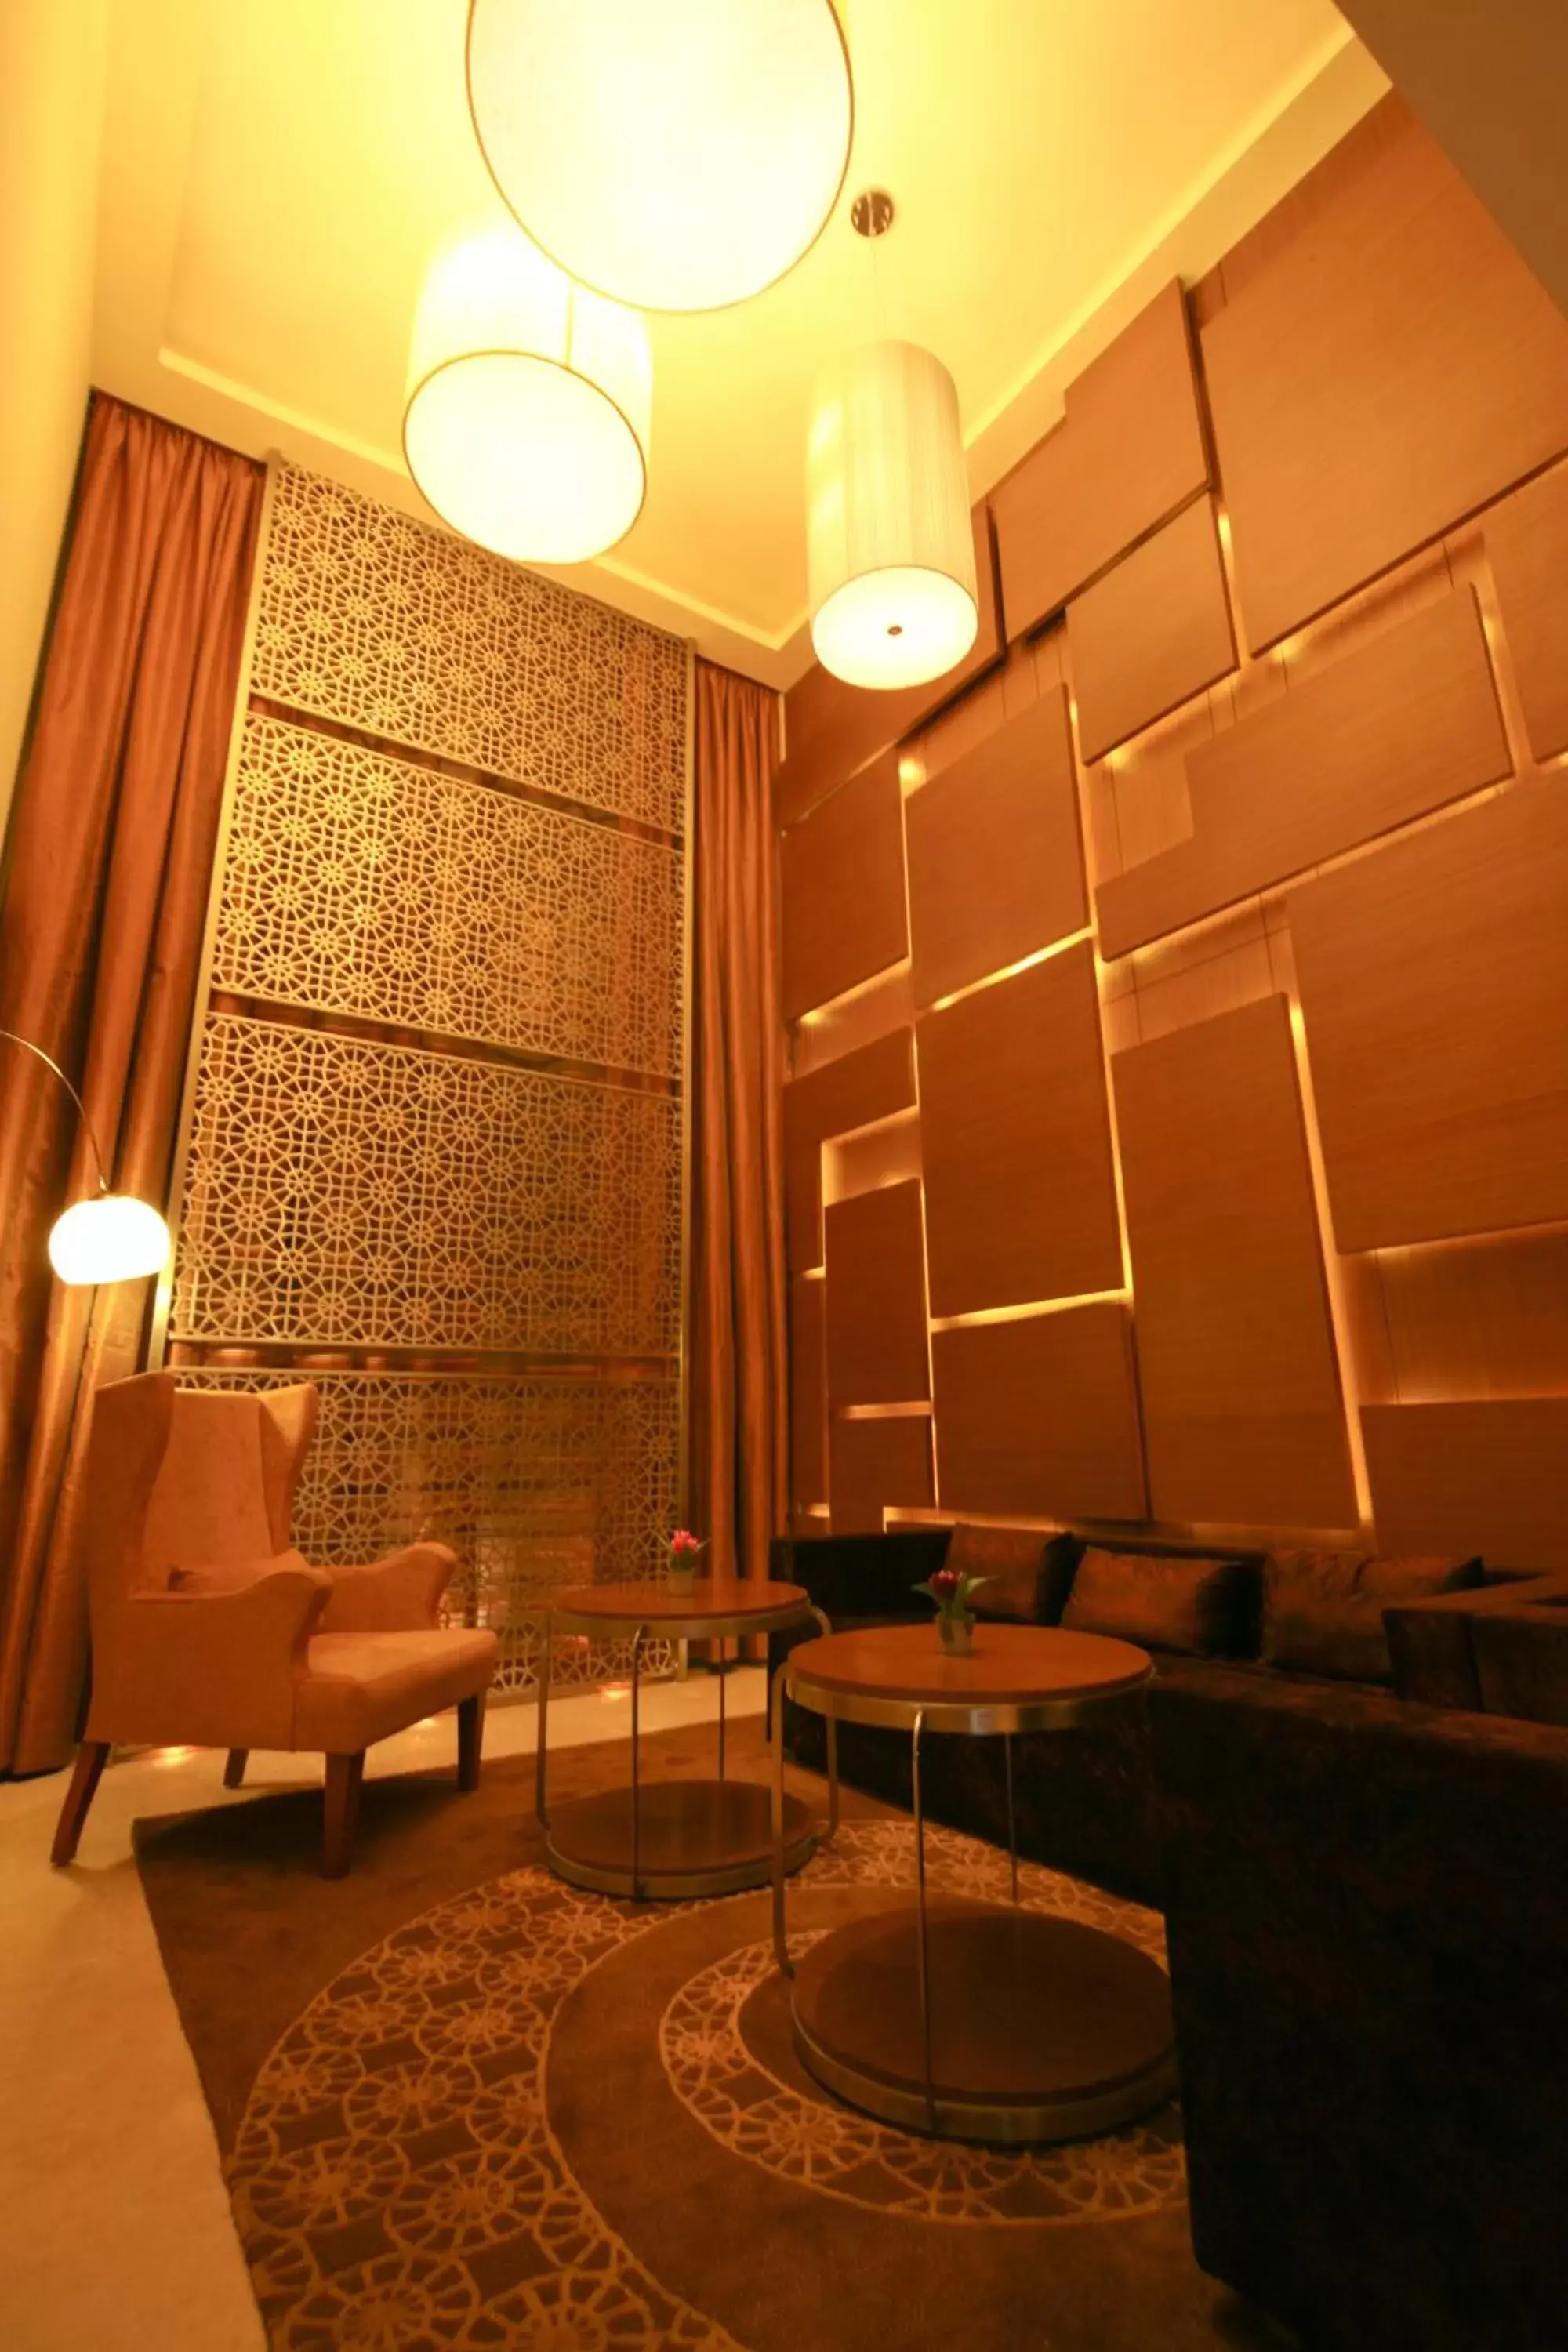 Lobby or reception, Bathroom in Comfort Inn Legacy